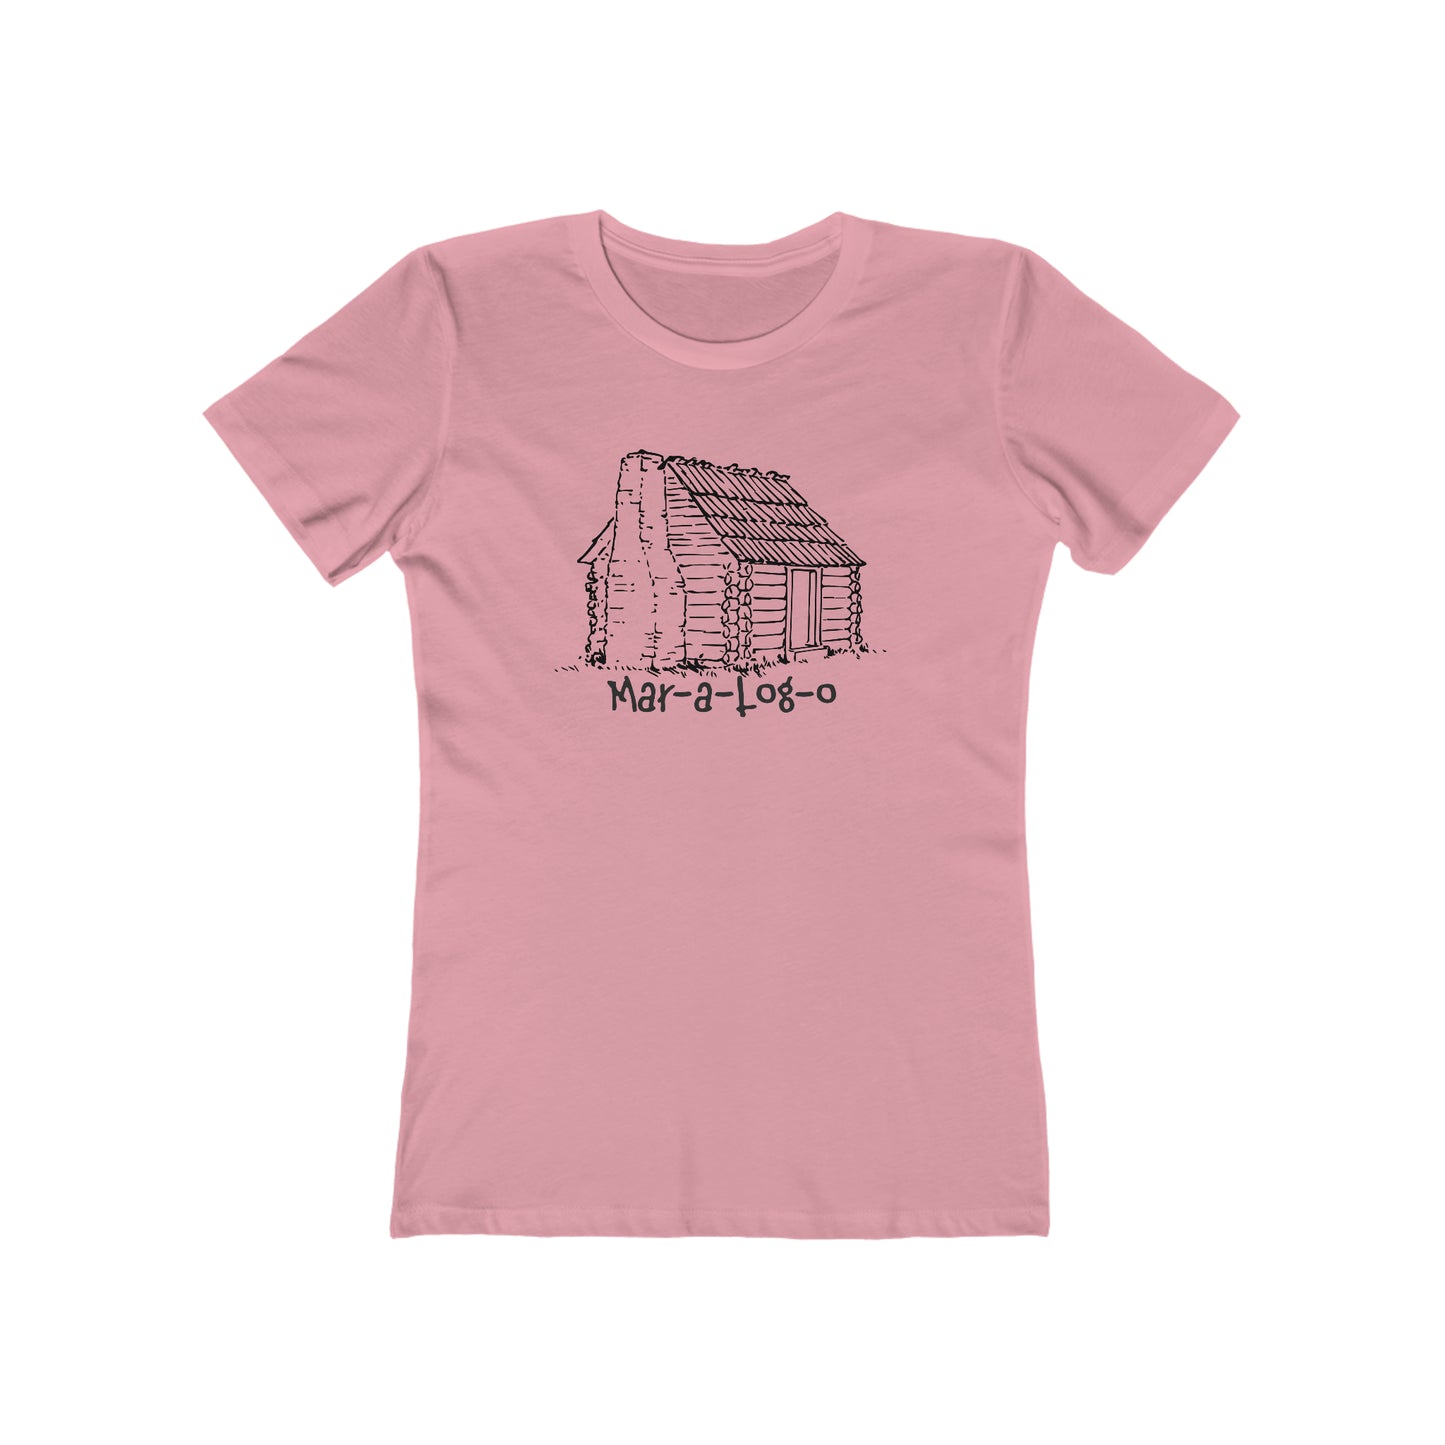 Mar-a-Log-o - Women's T-Shirt